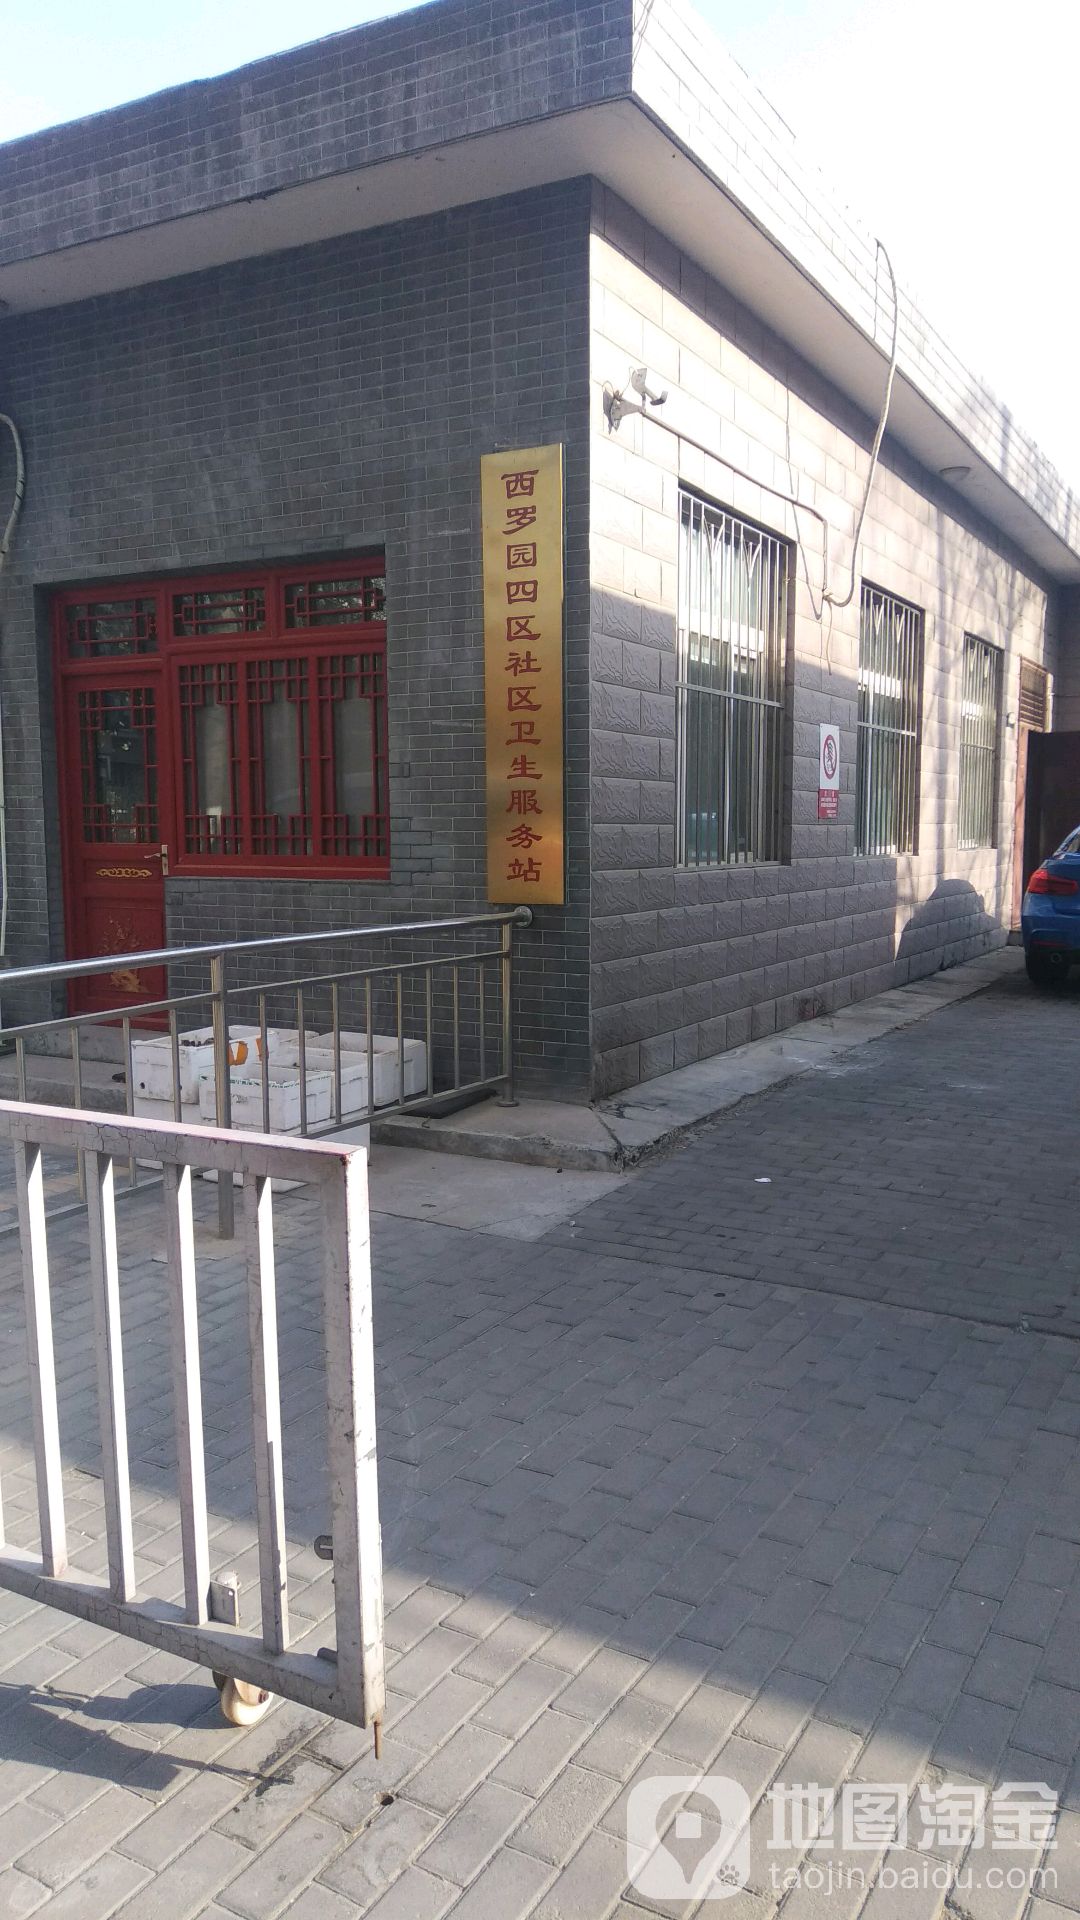 包含北京中医医院贩子联系方式「找对人就有号」【10分钟出号】的词条